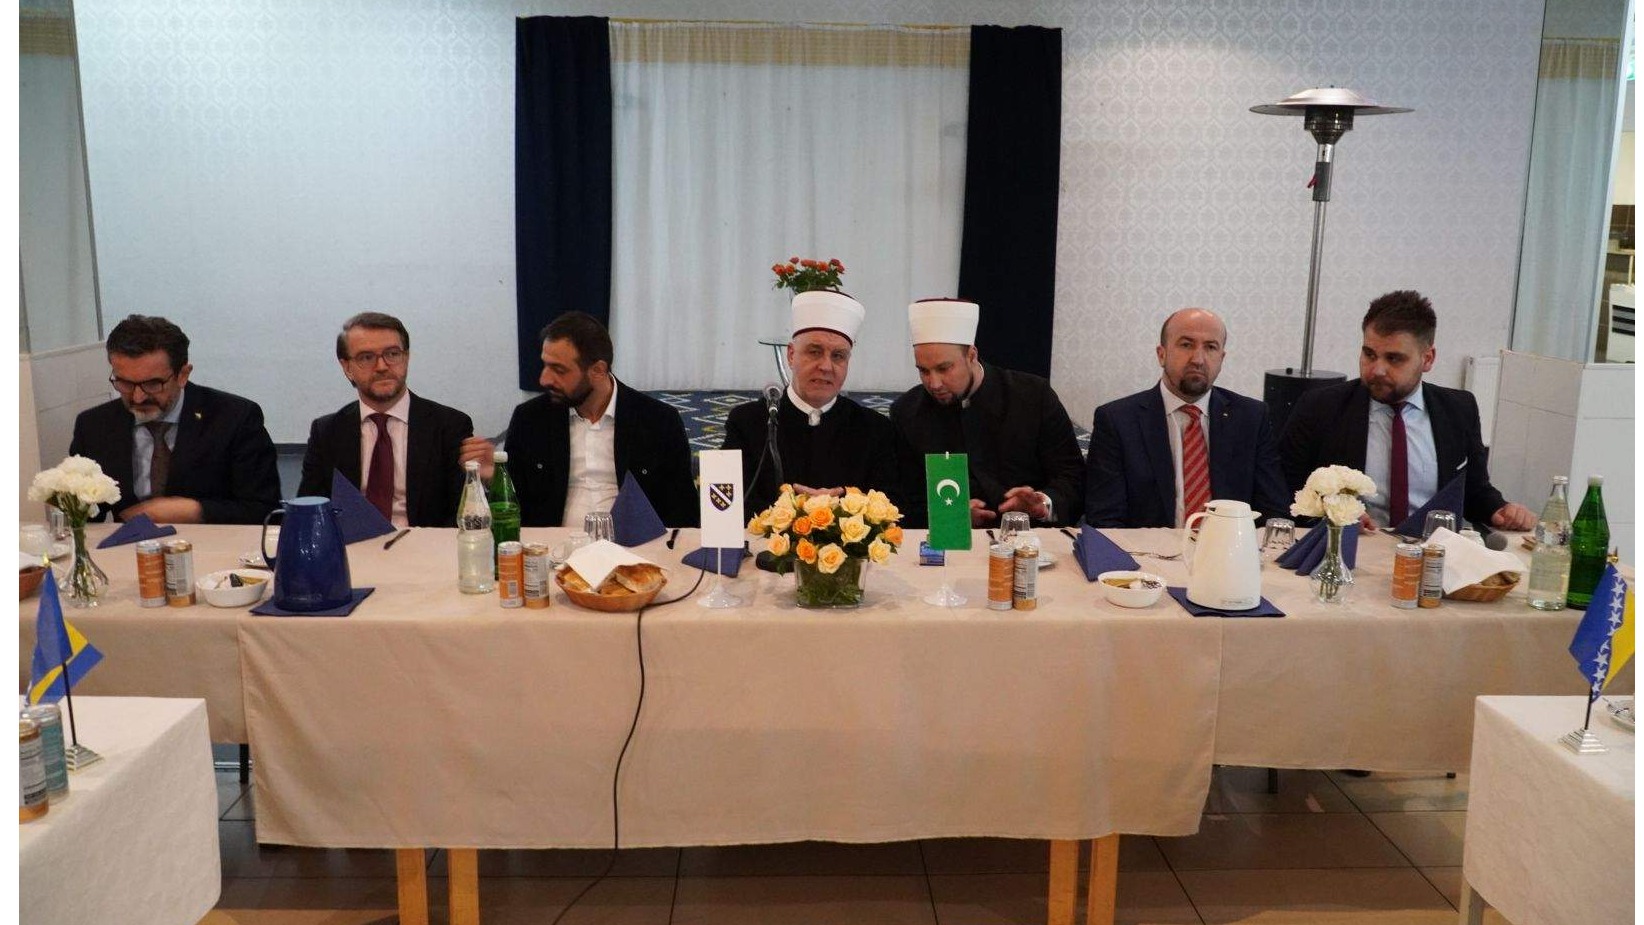 Održan sastanak reisul-uleme s imamima i predsjednicima džemata medžlisa Frankfurt, Nordrhein-Westfalen i Hannover